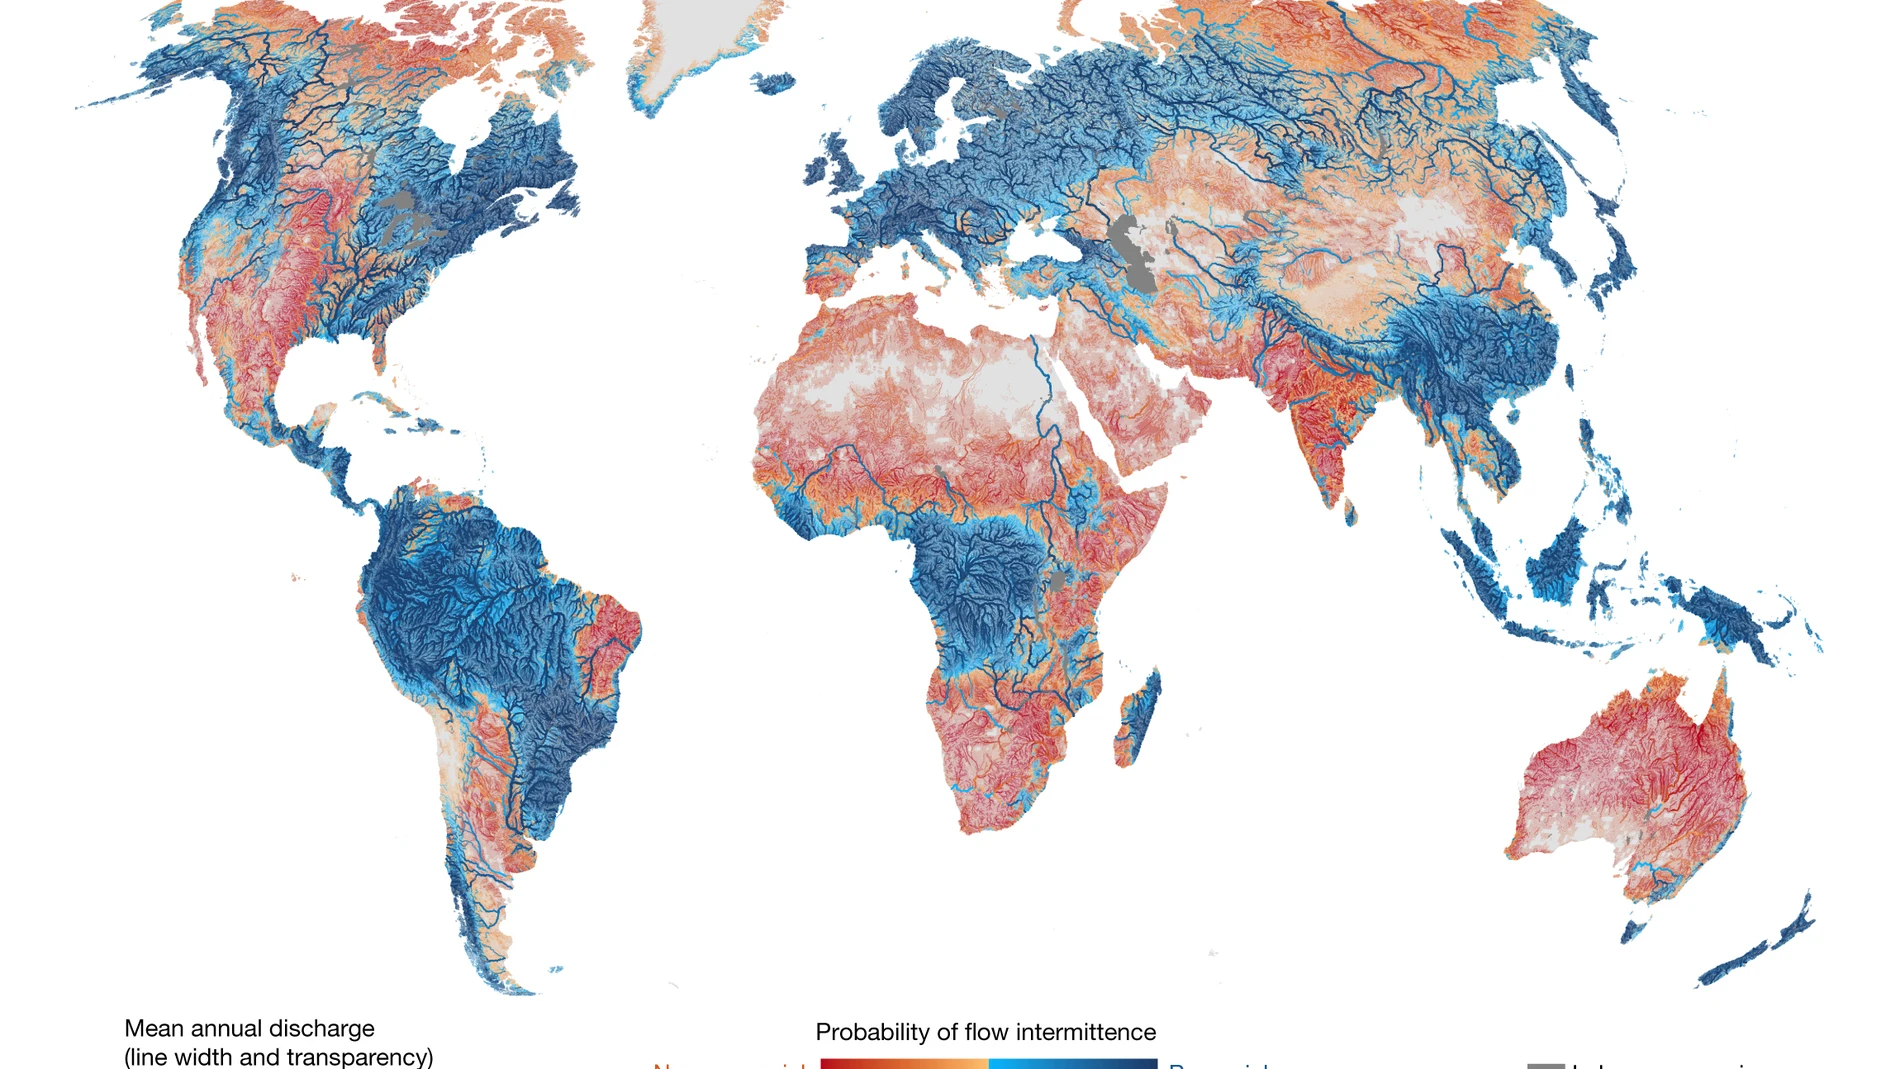 Los colores de este mapa representan la probabilidad de que un curso de agua sea permanente: el color azul significa “seguro que tiene agua todo el año” y el color rojo, “seguro que se seca al menos un día al año”. Los colores intermedios representan cuencas y cauces con más incertidumbre.